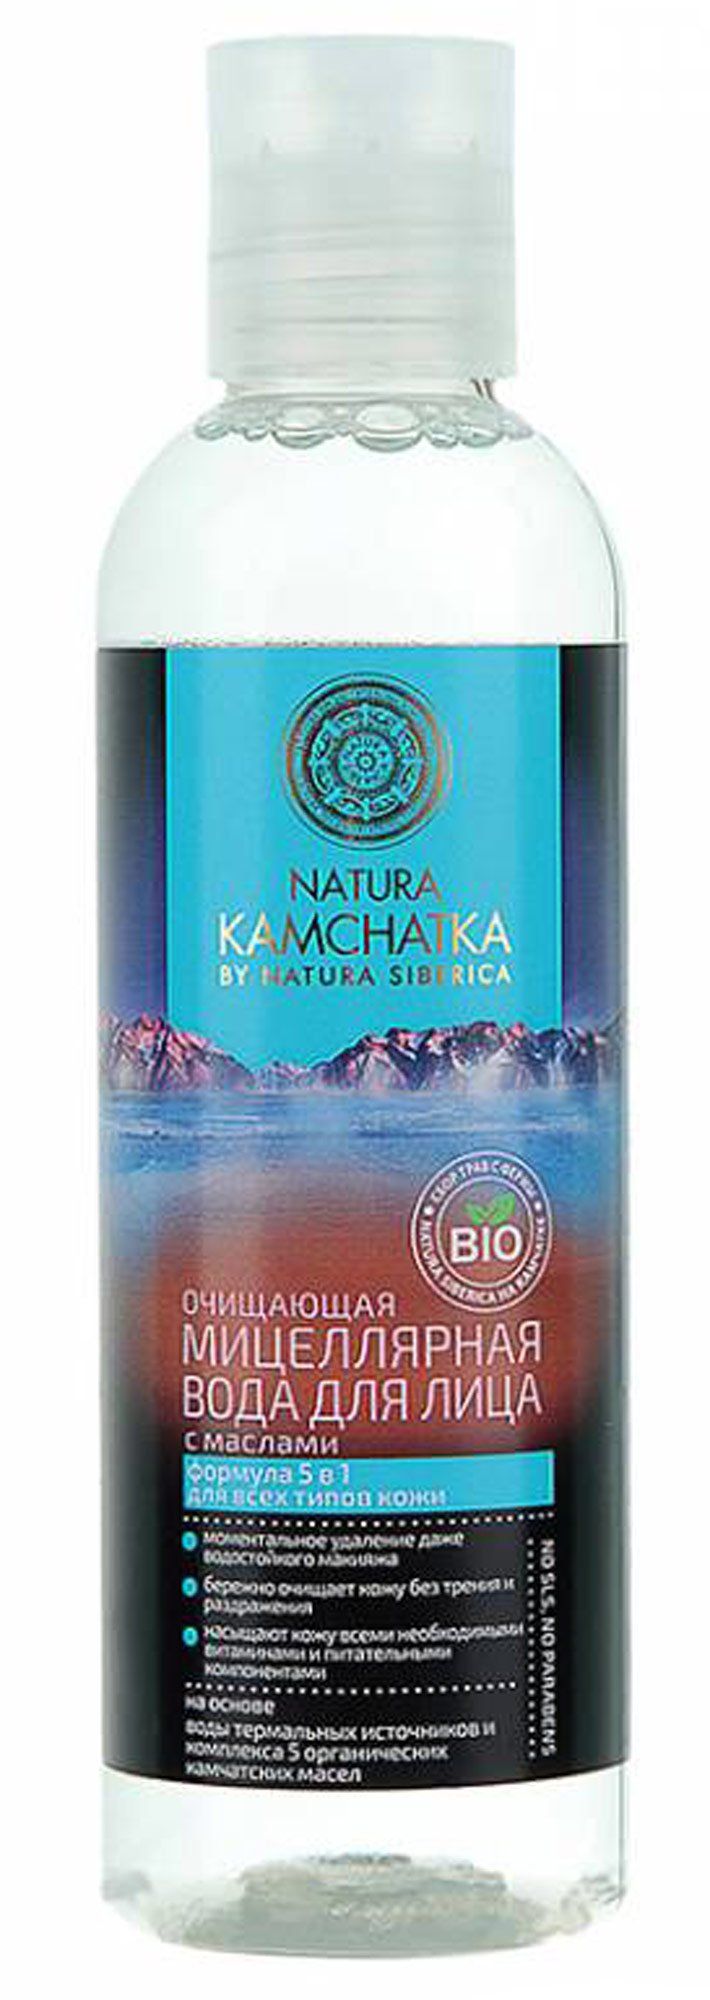 фото упаковки Natura Kamchatka вода мицеллярная очищающая с маслами